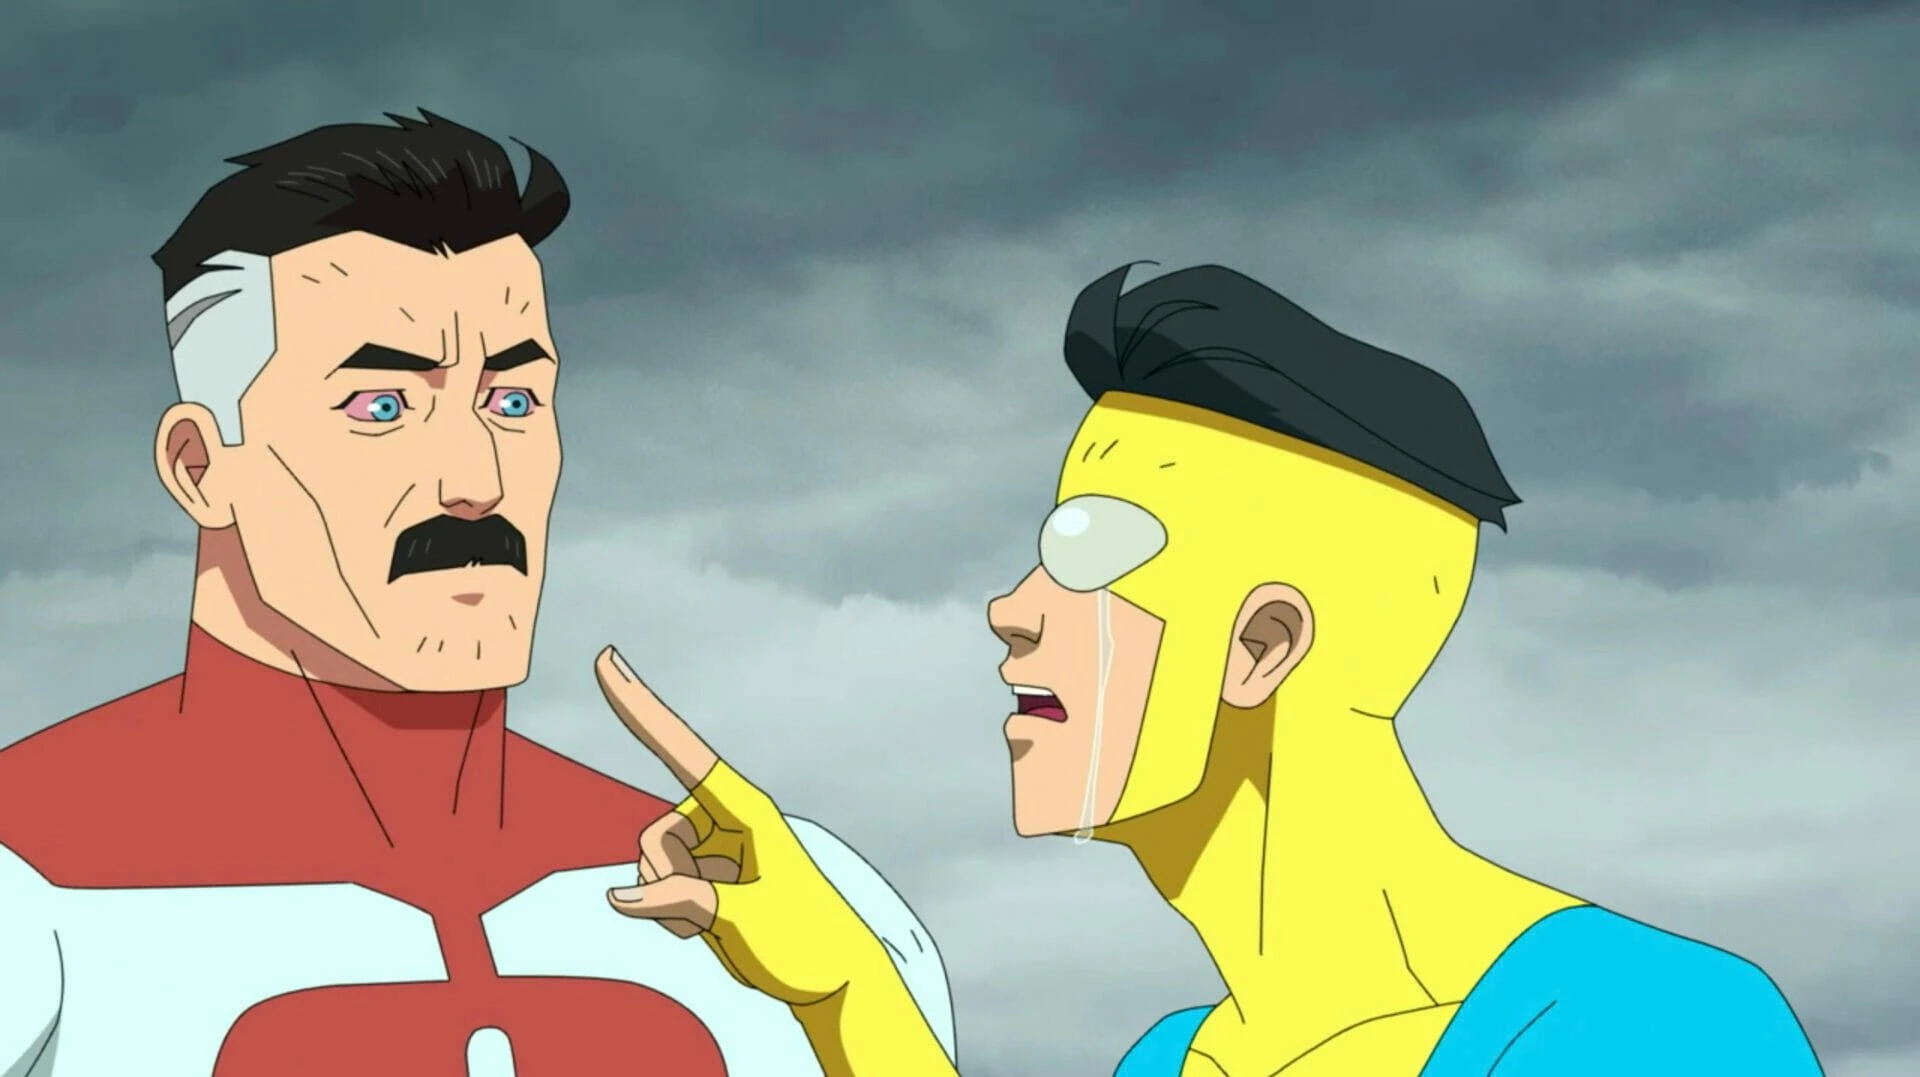 Invincible: Imagem da 2ª temporada apresenta o super-herói Shapesmith